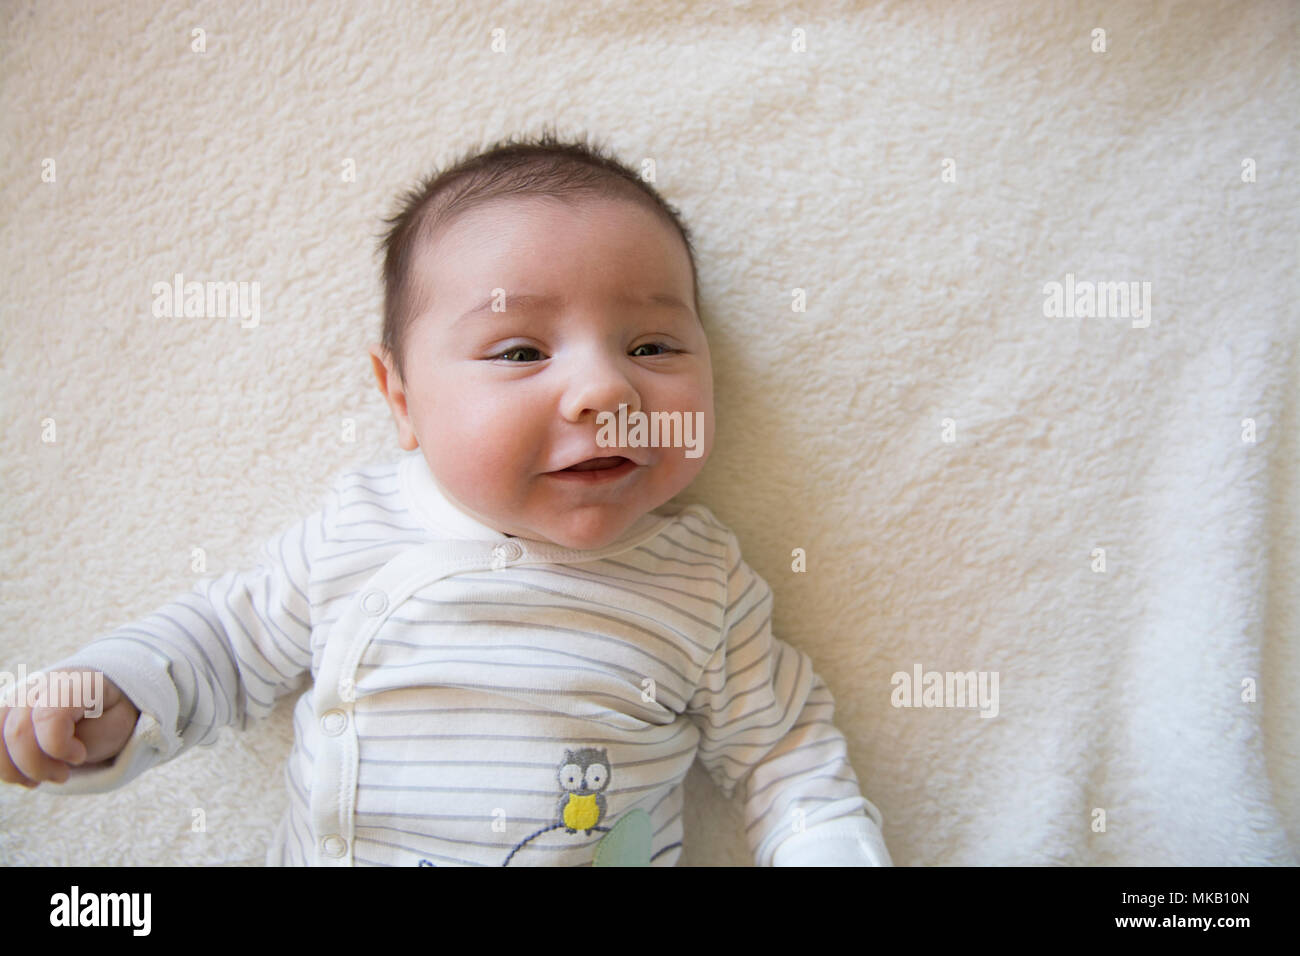 2 mes de edad Baby Boy en una sábana blanca Foto de stock